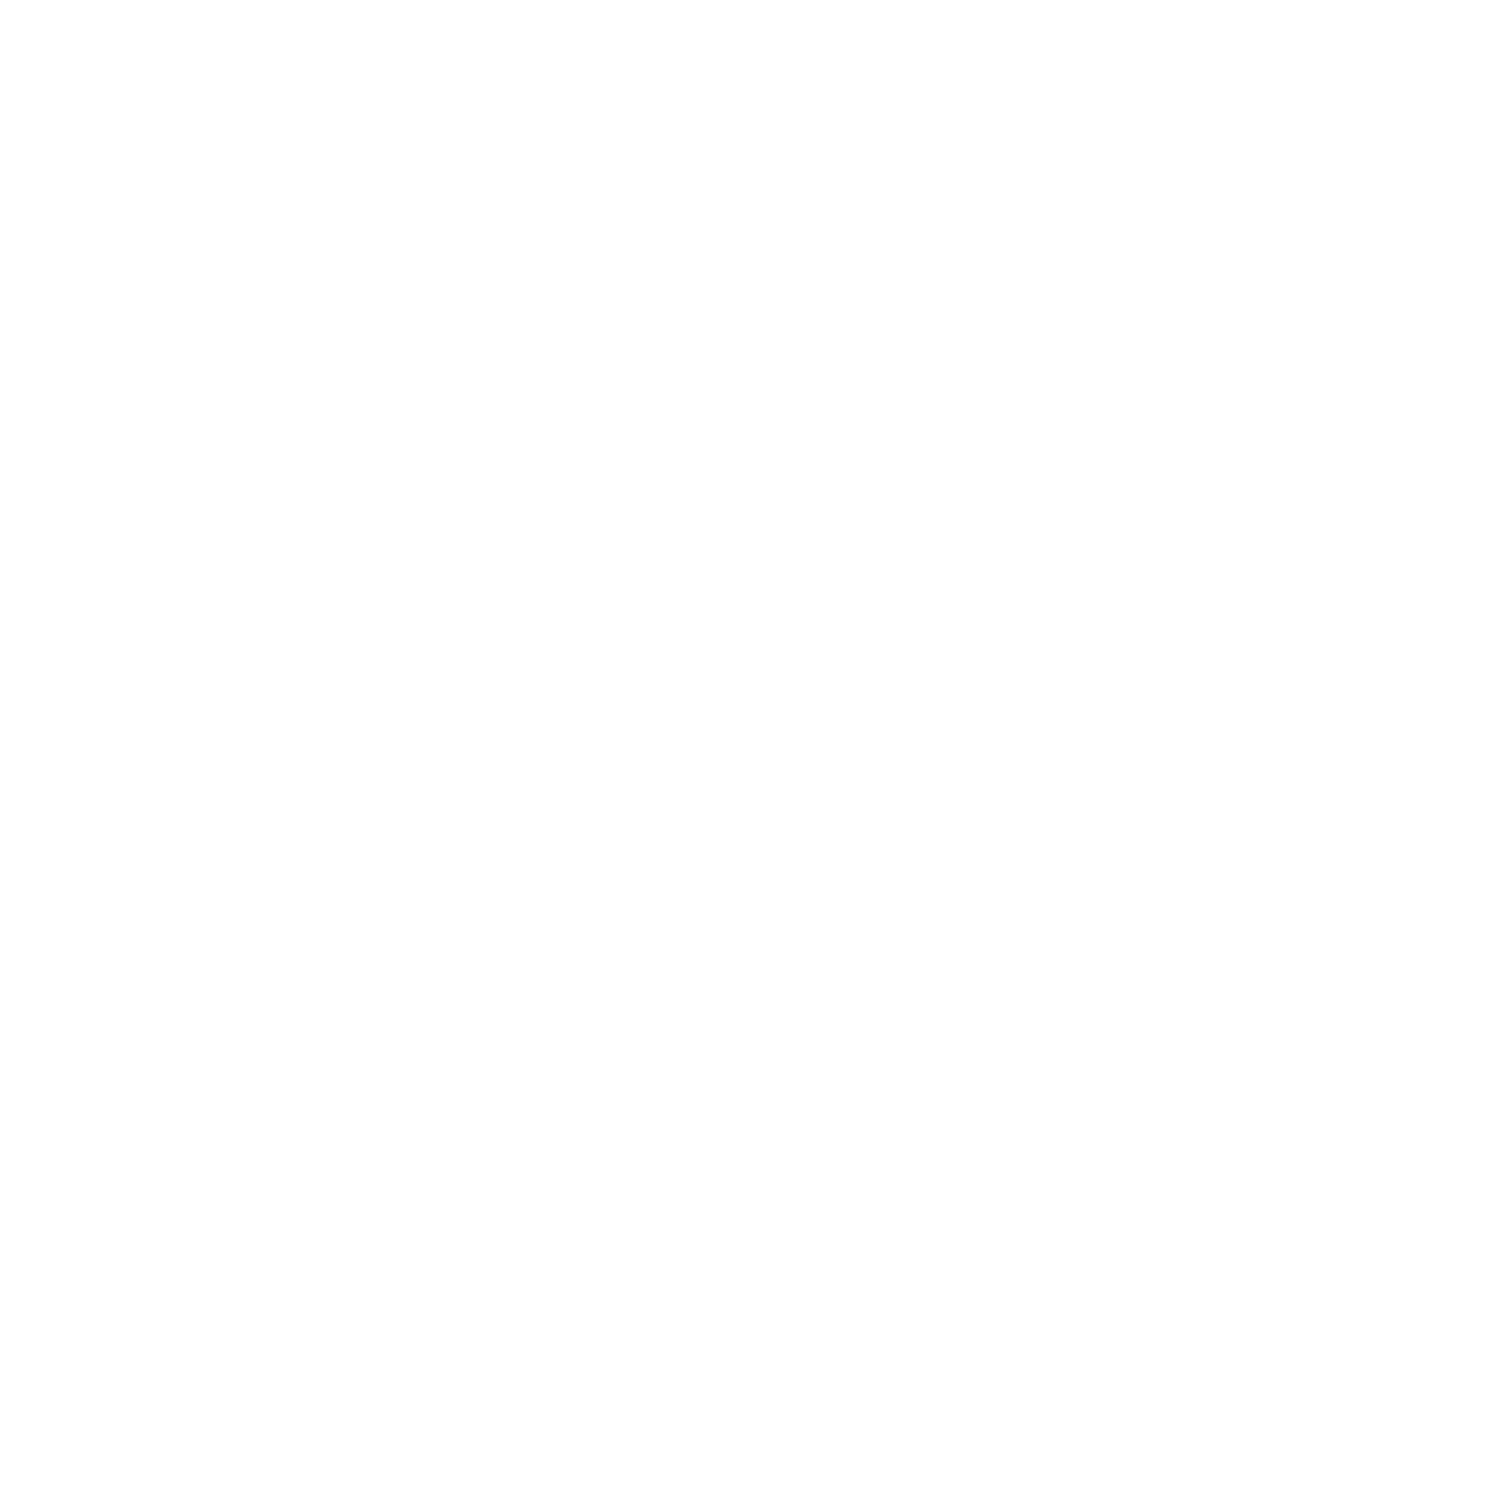 Zug Estates Holding logo for dark backgrounds (transparent PNG)